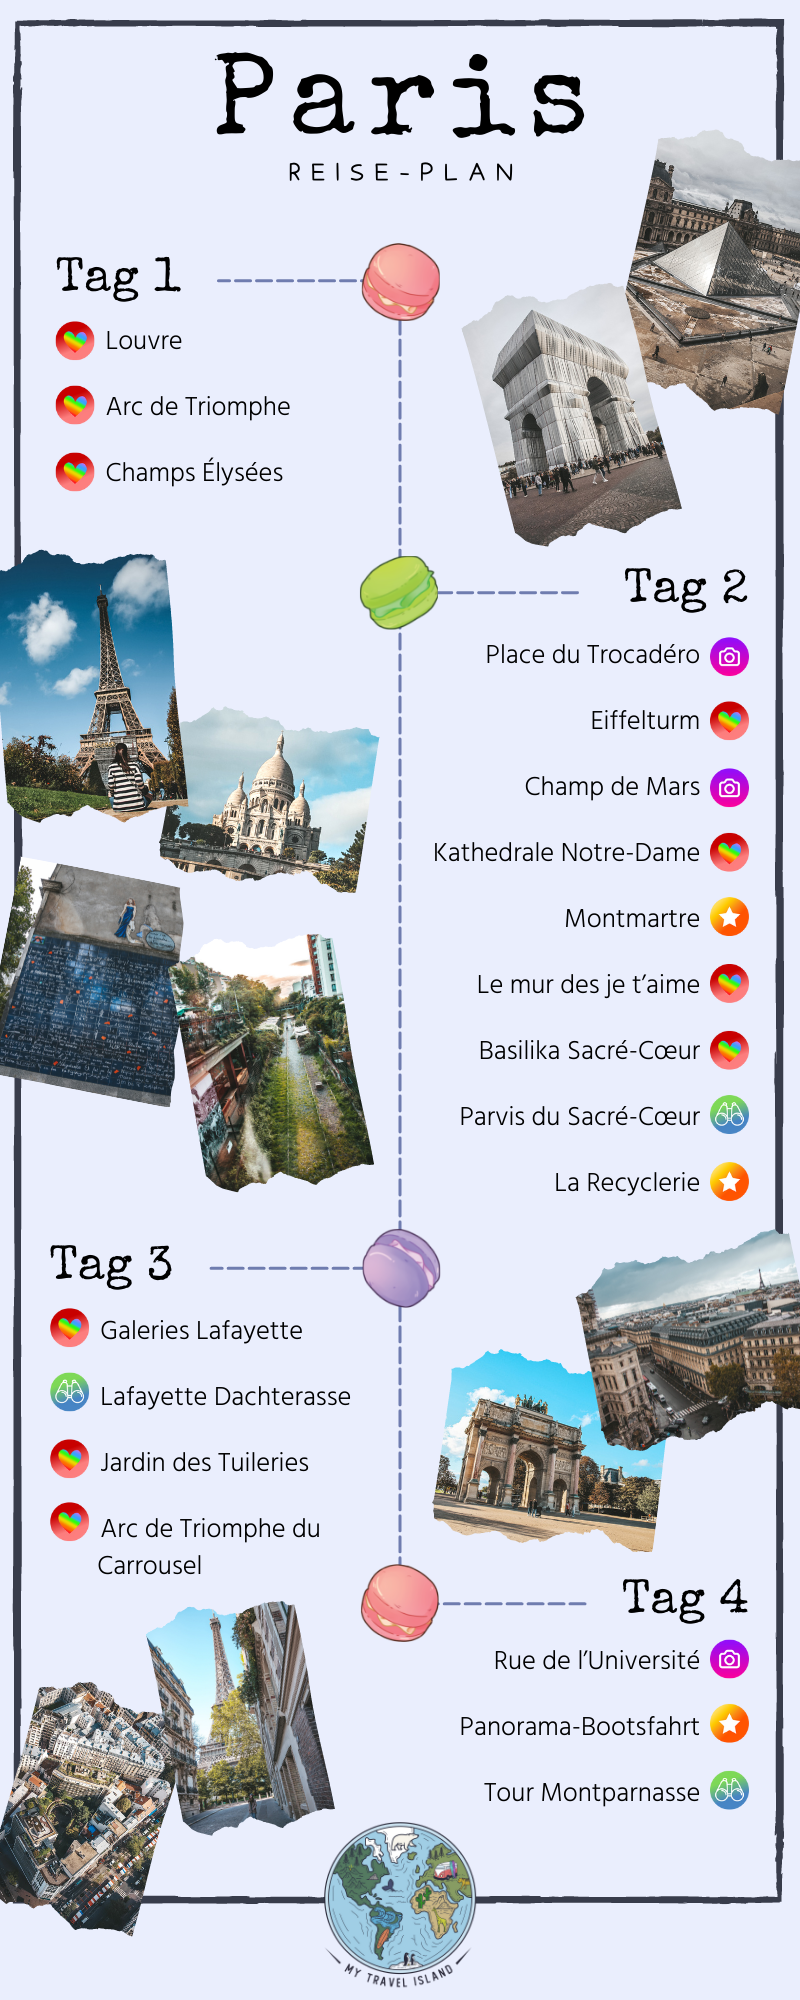 Paris Reise-Map für 4 Tage 
© Marielle Janotta - My Travel Island